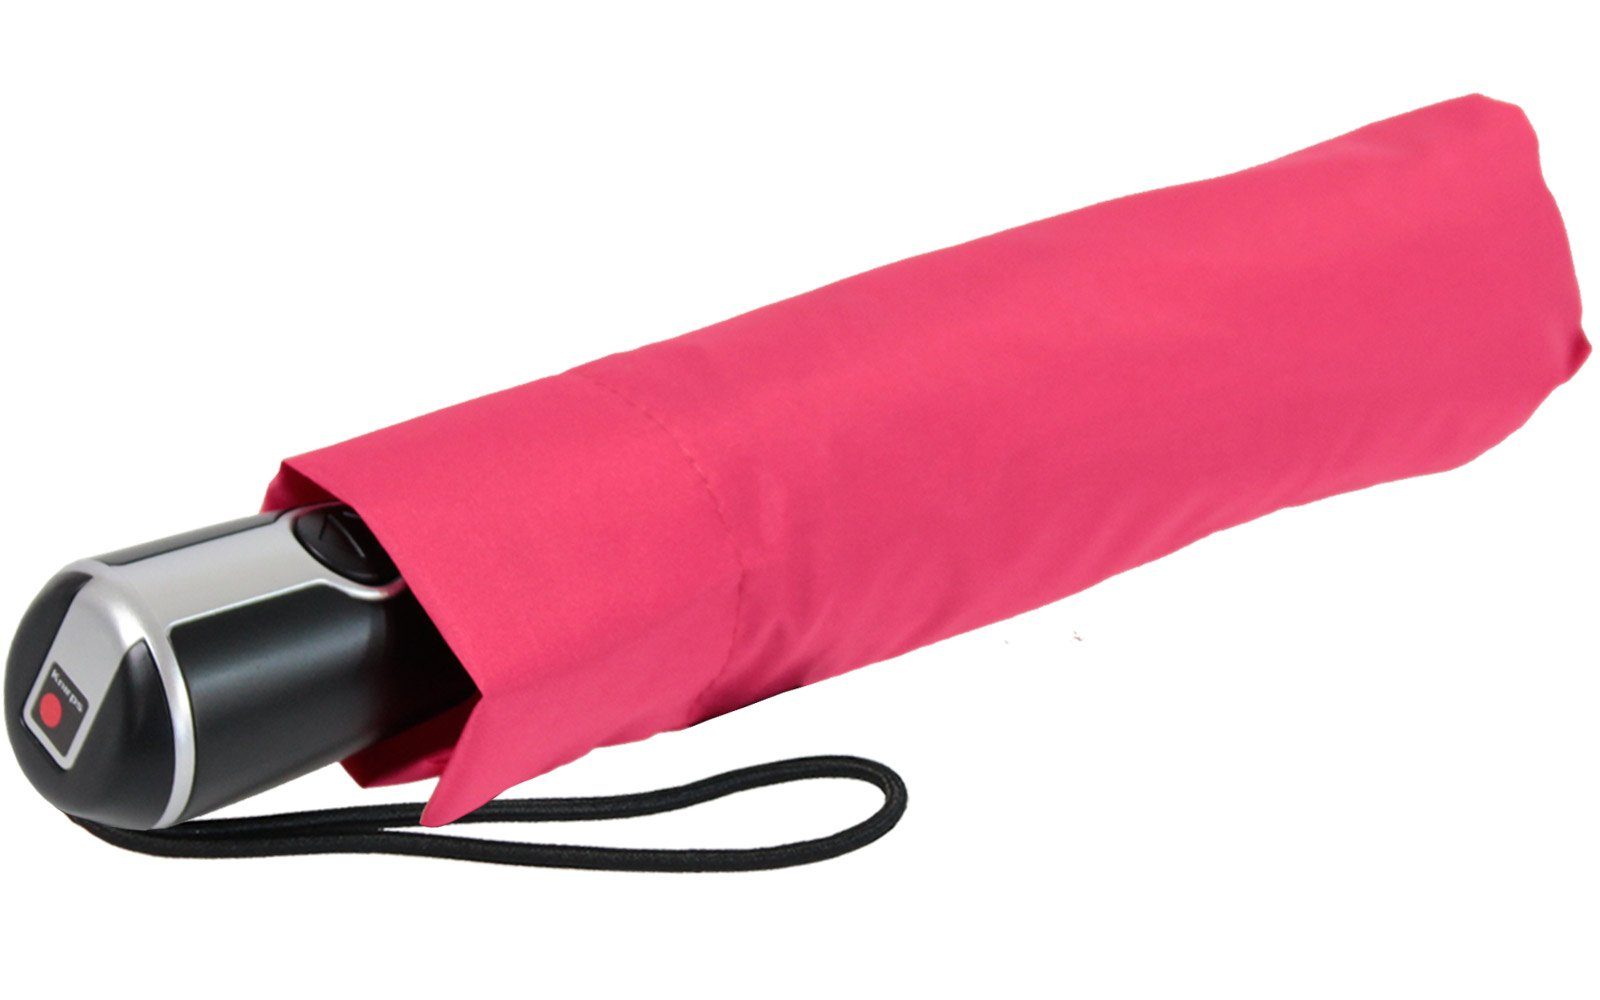 Knirps® für mit Begleiter Schirm große, der stabile Taschenregenschirm Auf-Zu-Automatik Damen, großer